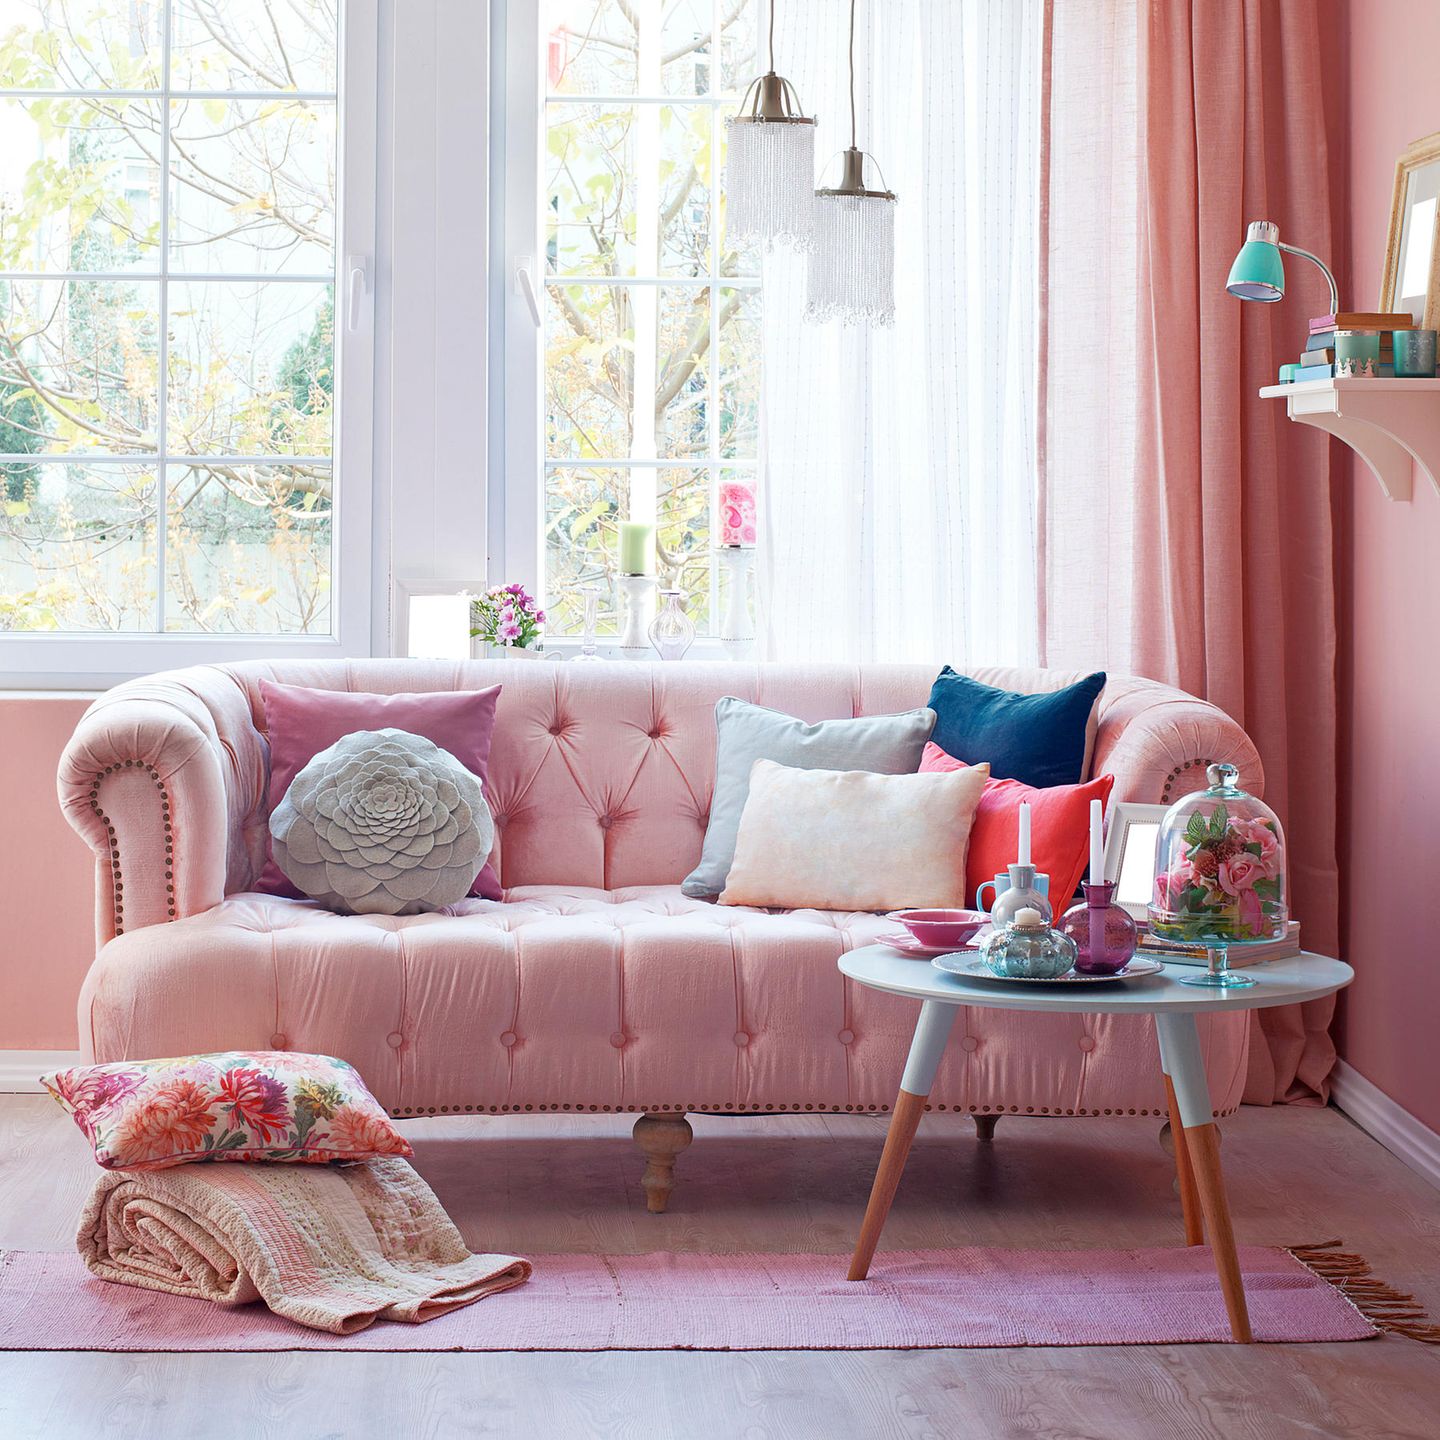 Wer es blushfarben, aber dennoch knallig mag, setzt große Wohnakzente wie dieses Sofa, umhüllt von einem Blush-Teppich und -Vorhängen.